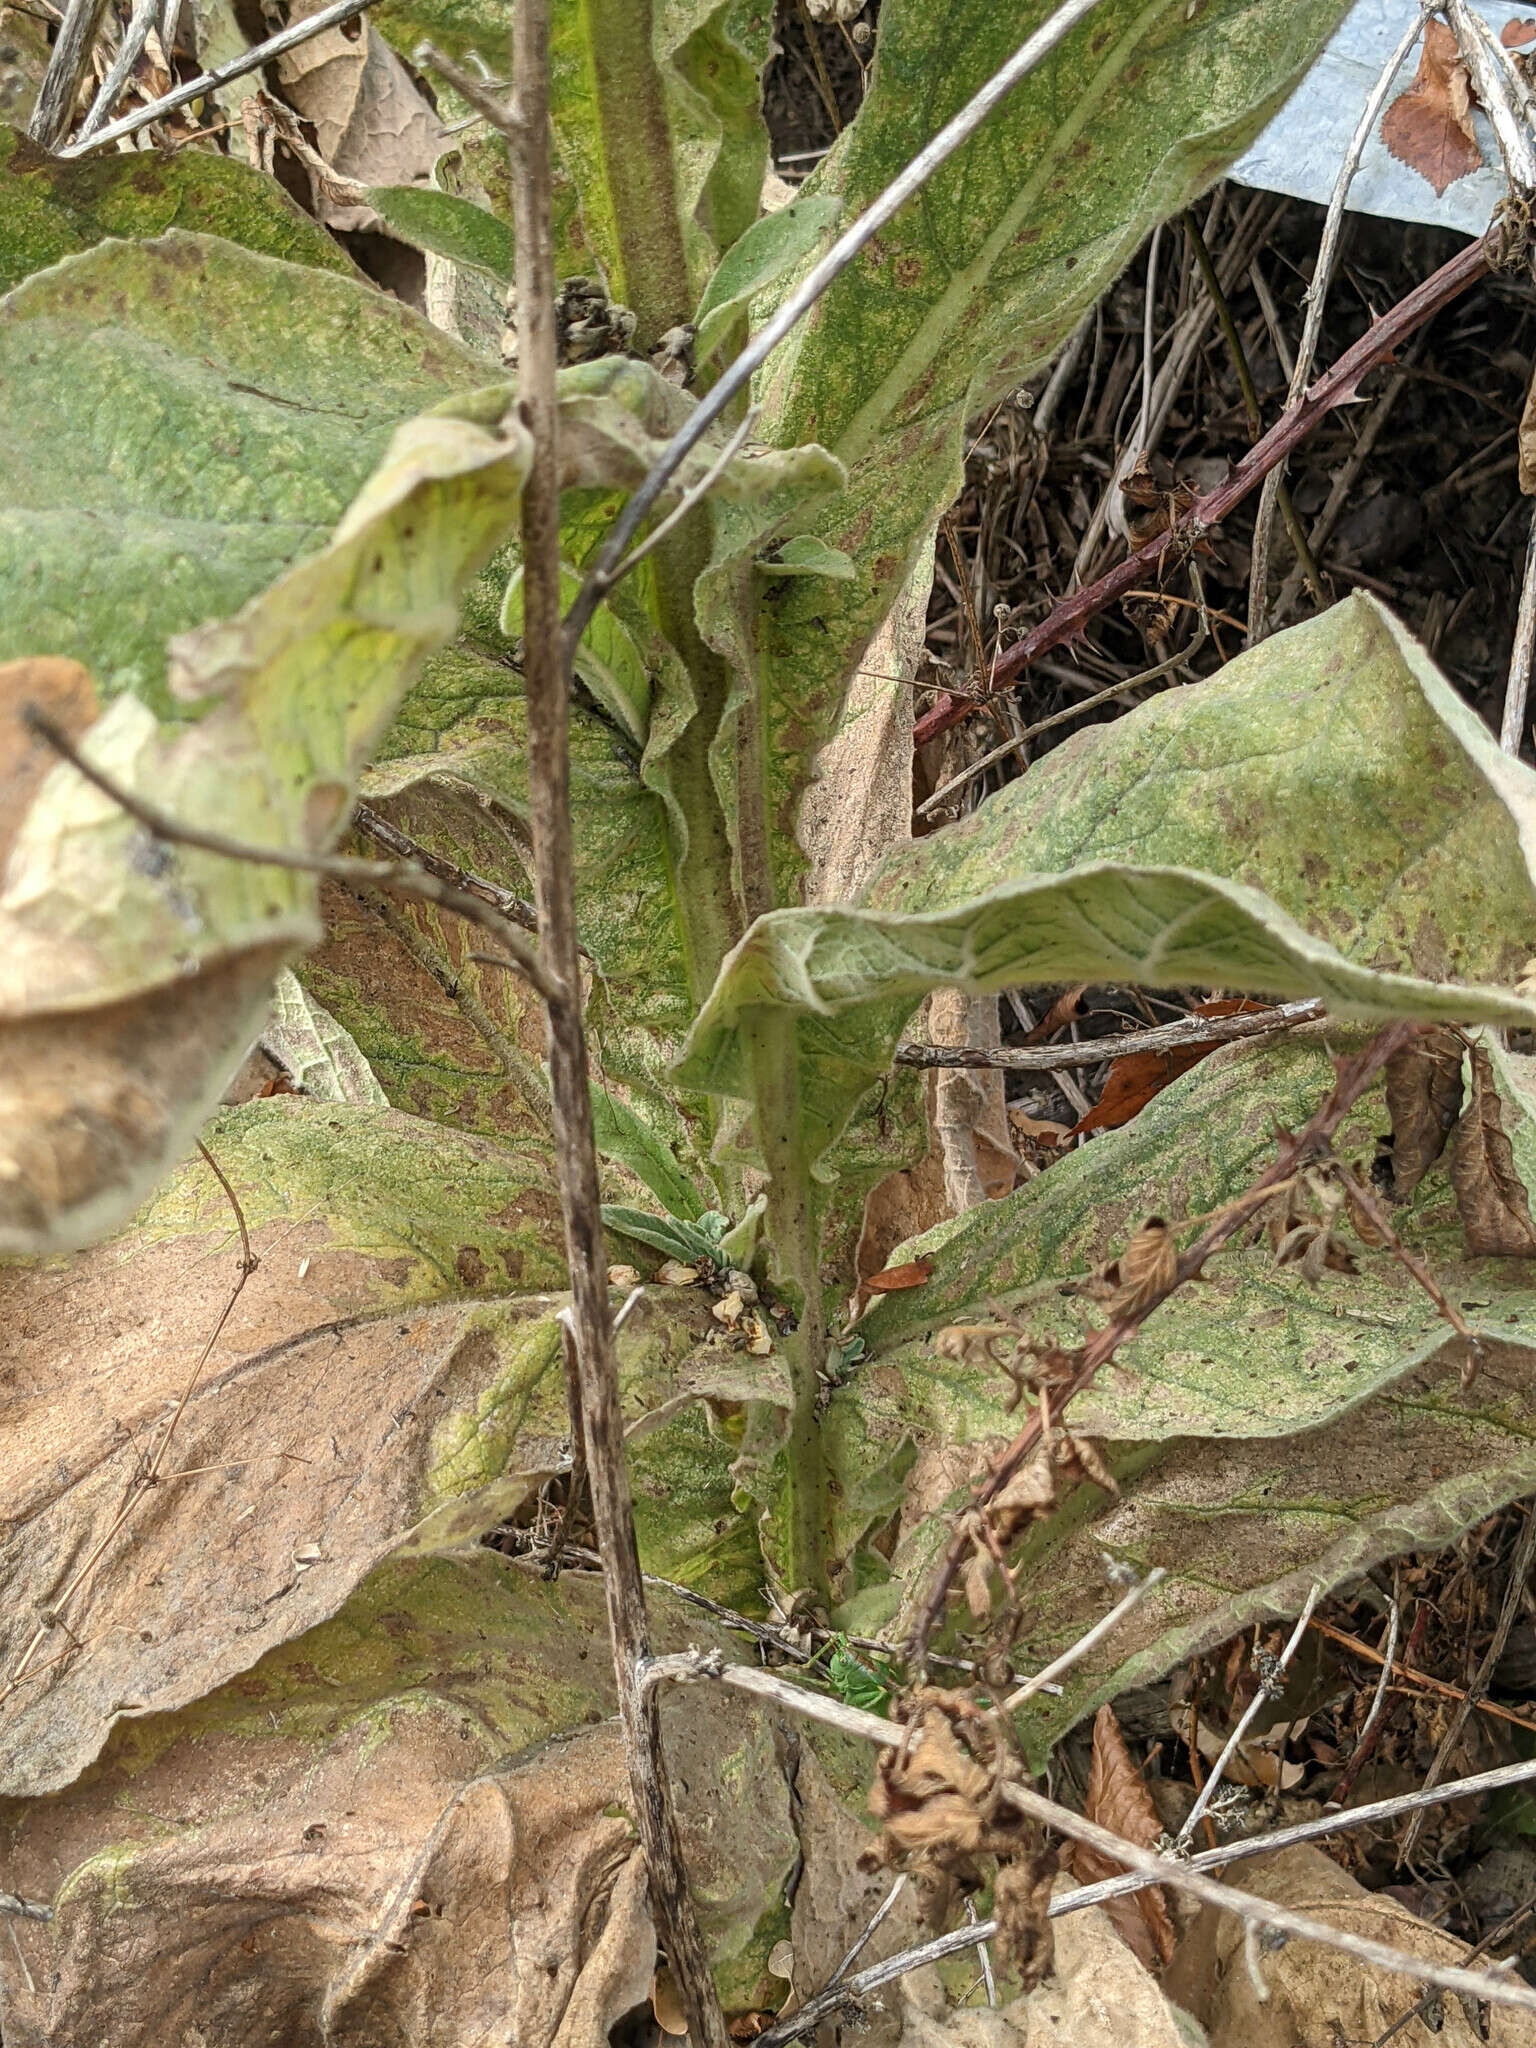 Image de Verbascum thapsus subsp. thapsus